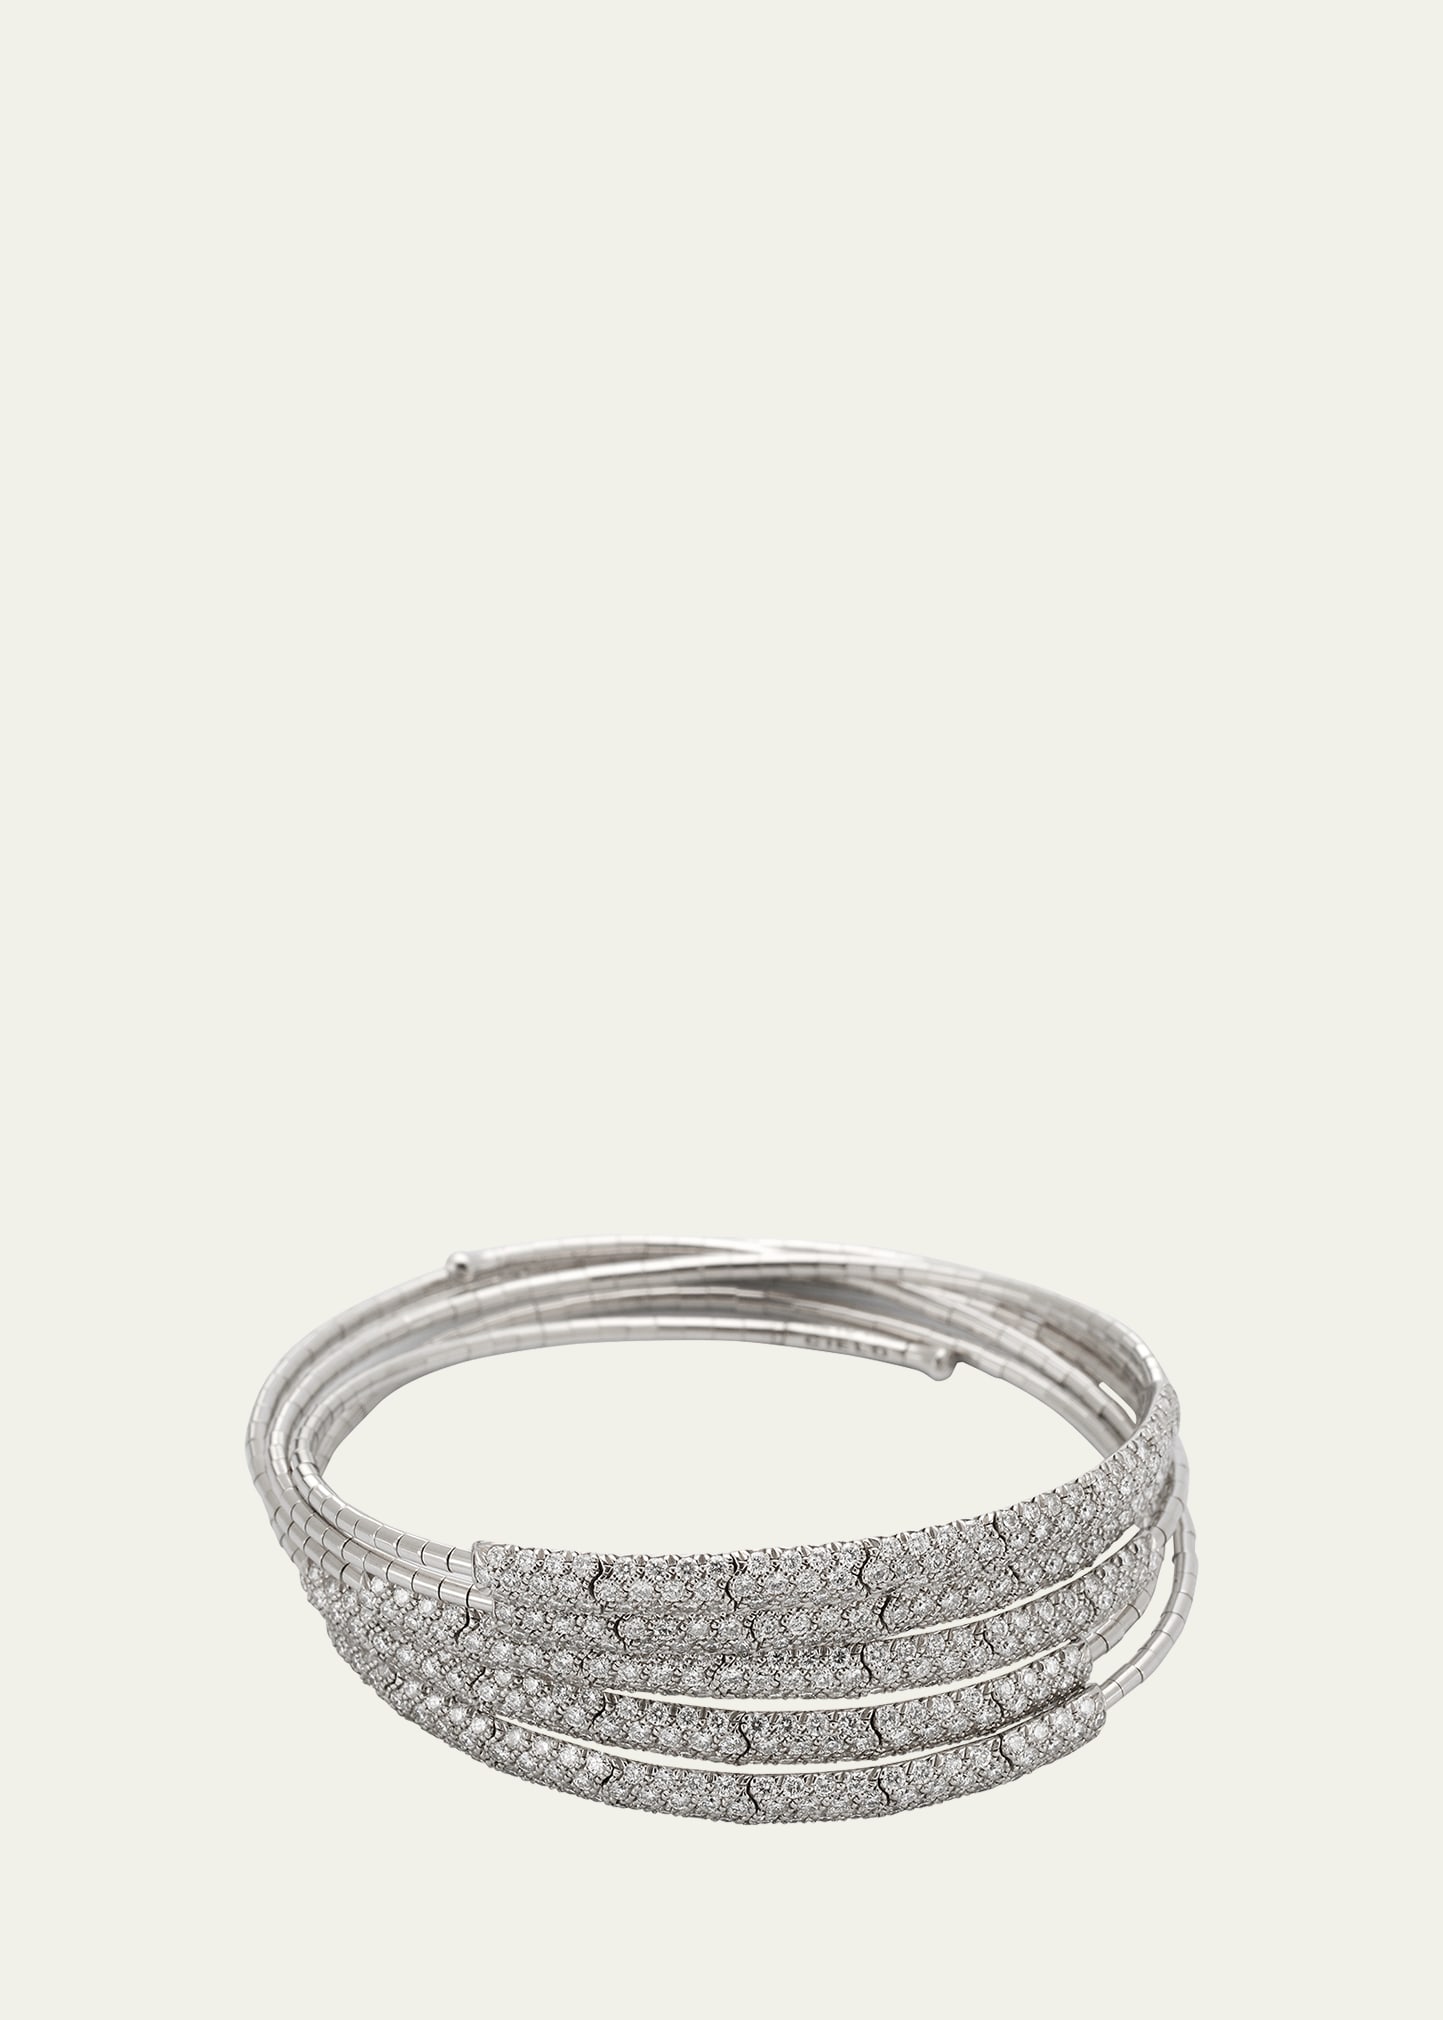 Mattia Cielo White Gold and Titanium Wrap Bracelet with Diamonds